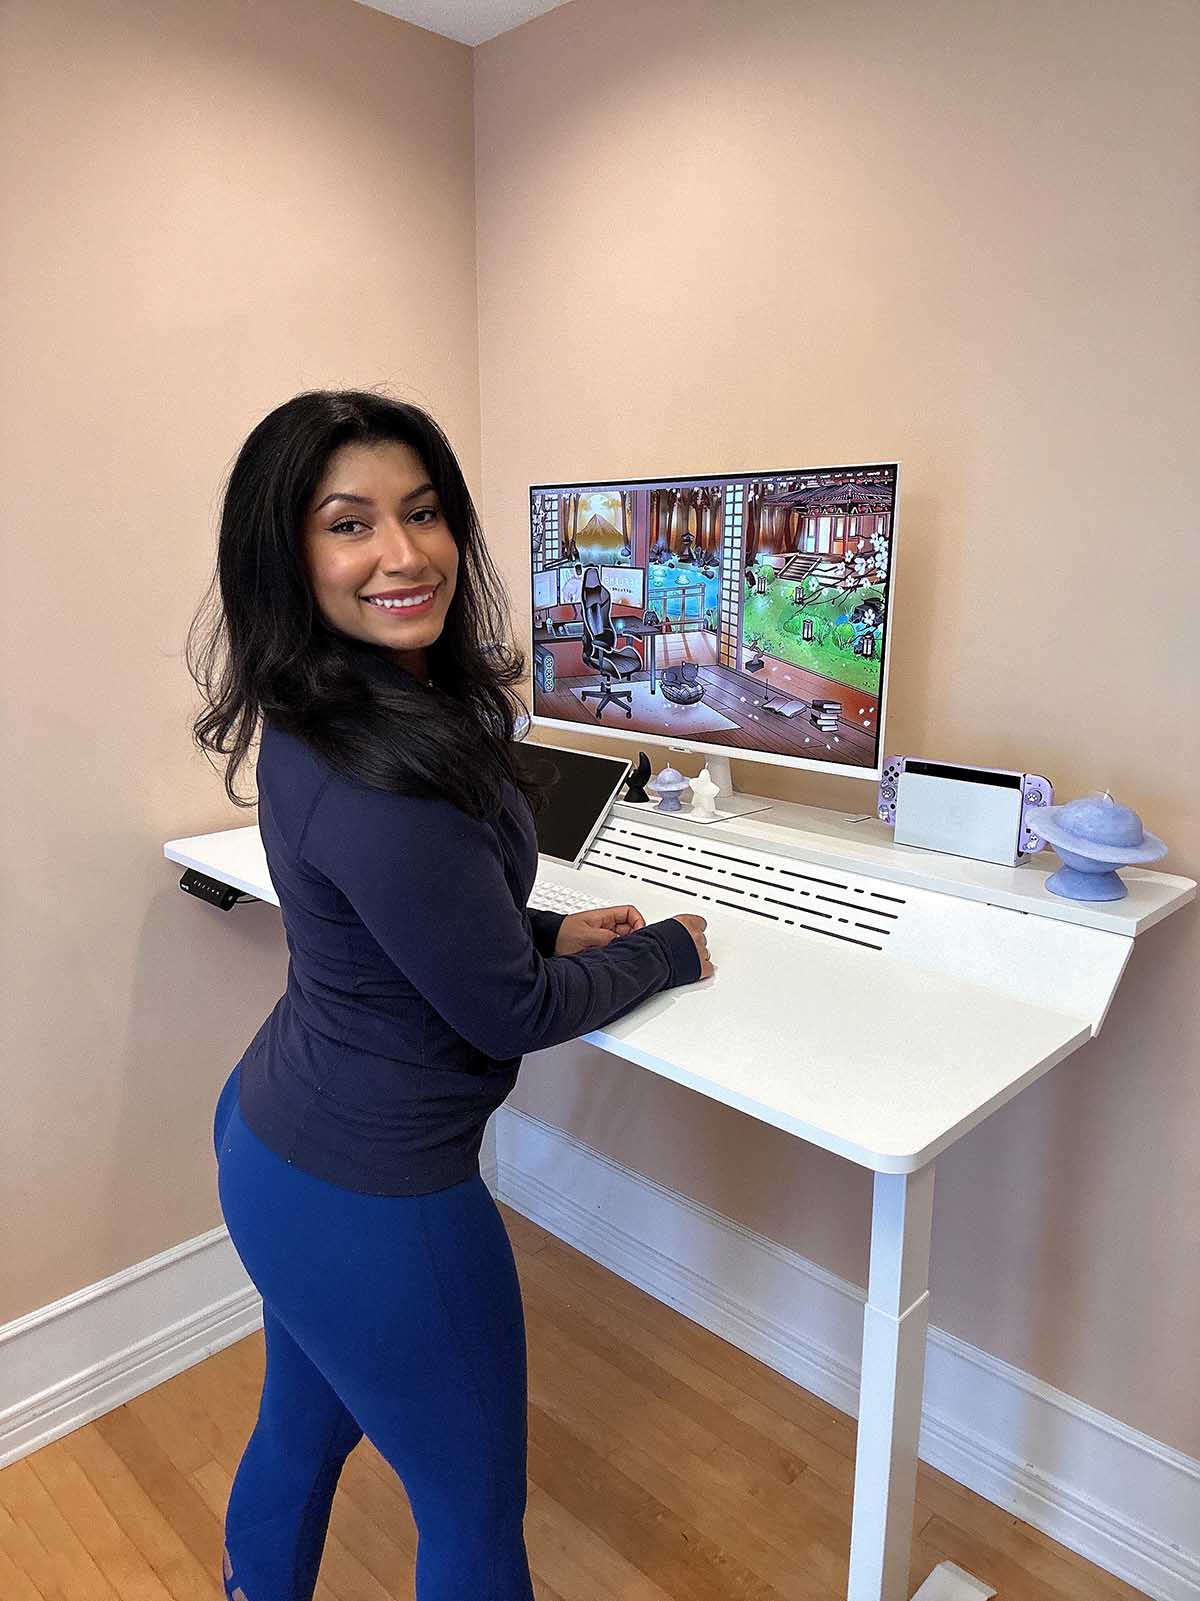 white piano standing desk in home